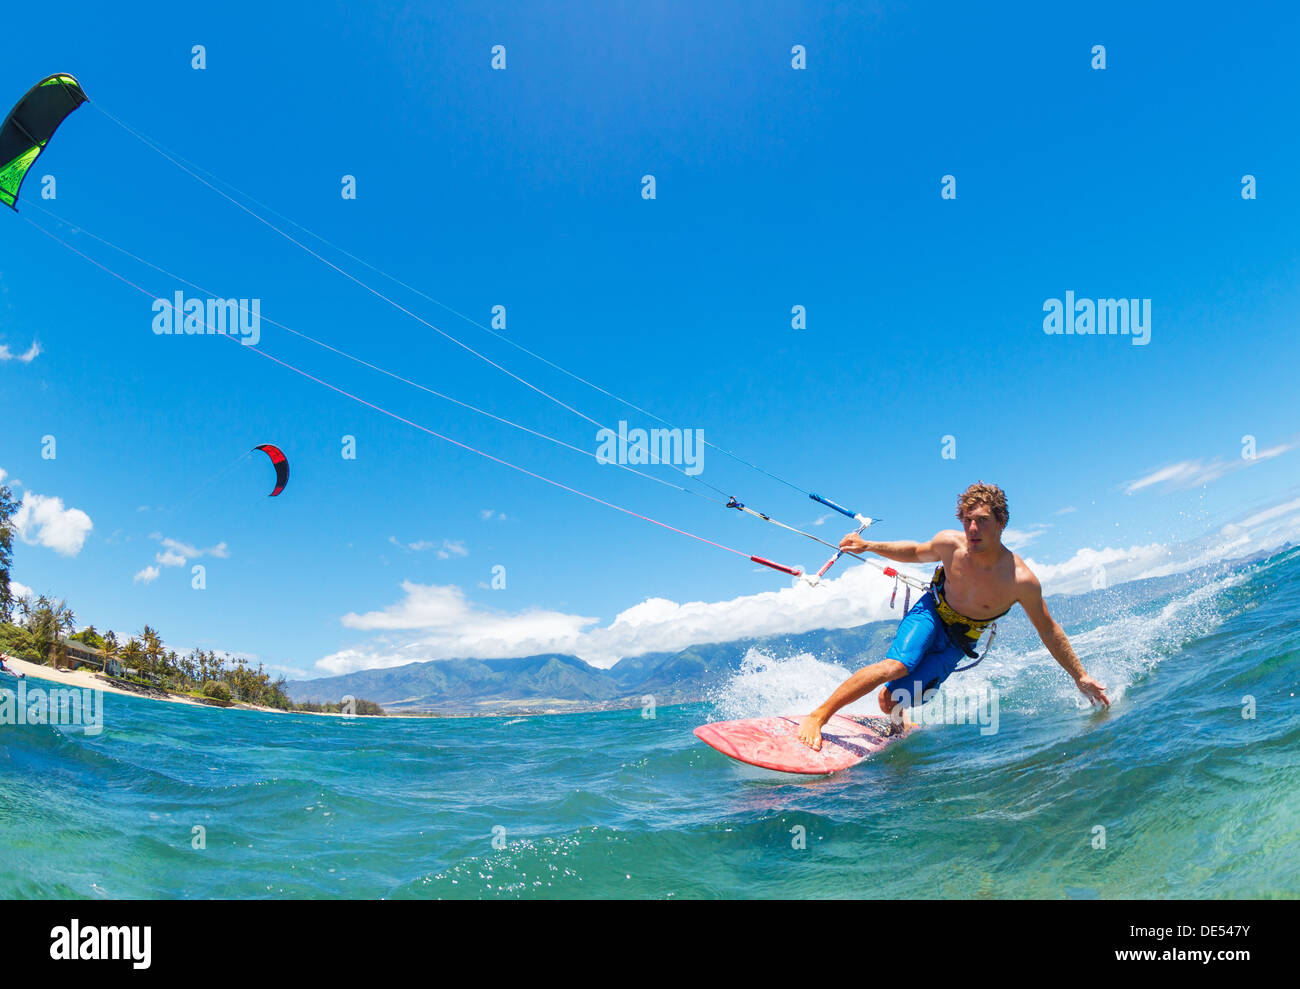 Giovane uomo KiteBoarding, Divertimento nell'oceano, sport estremo kitesurf Foto Stock